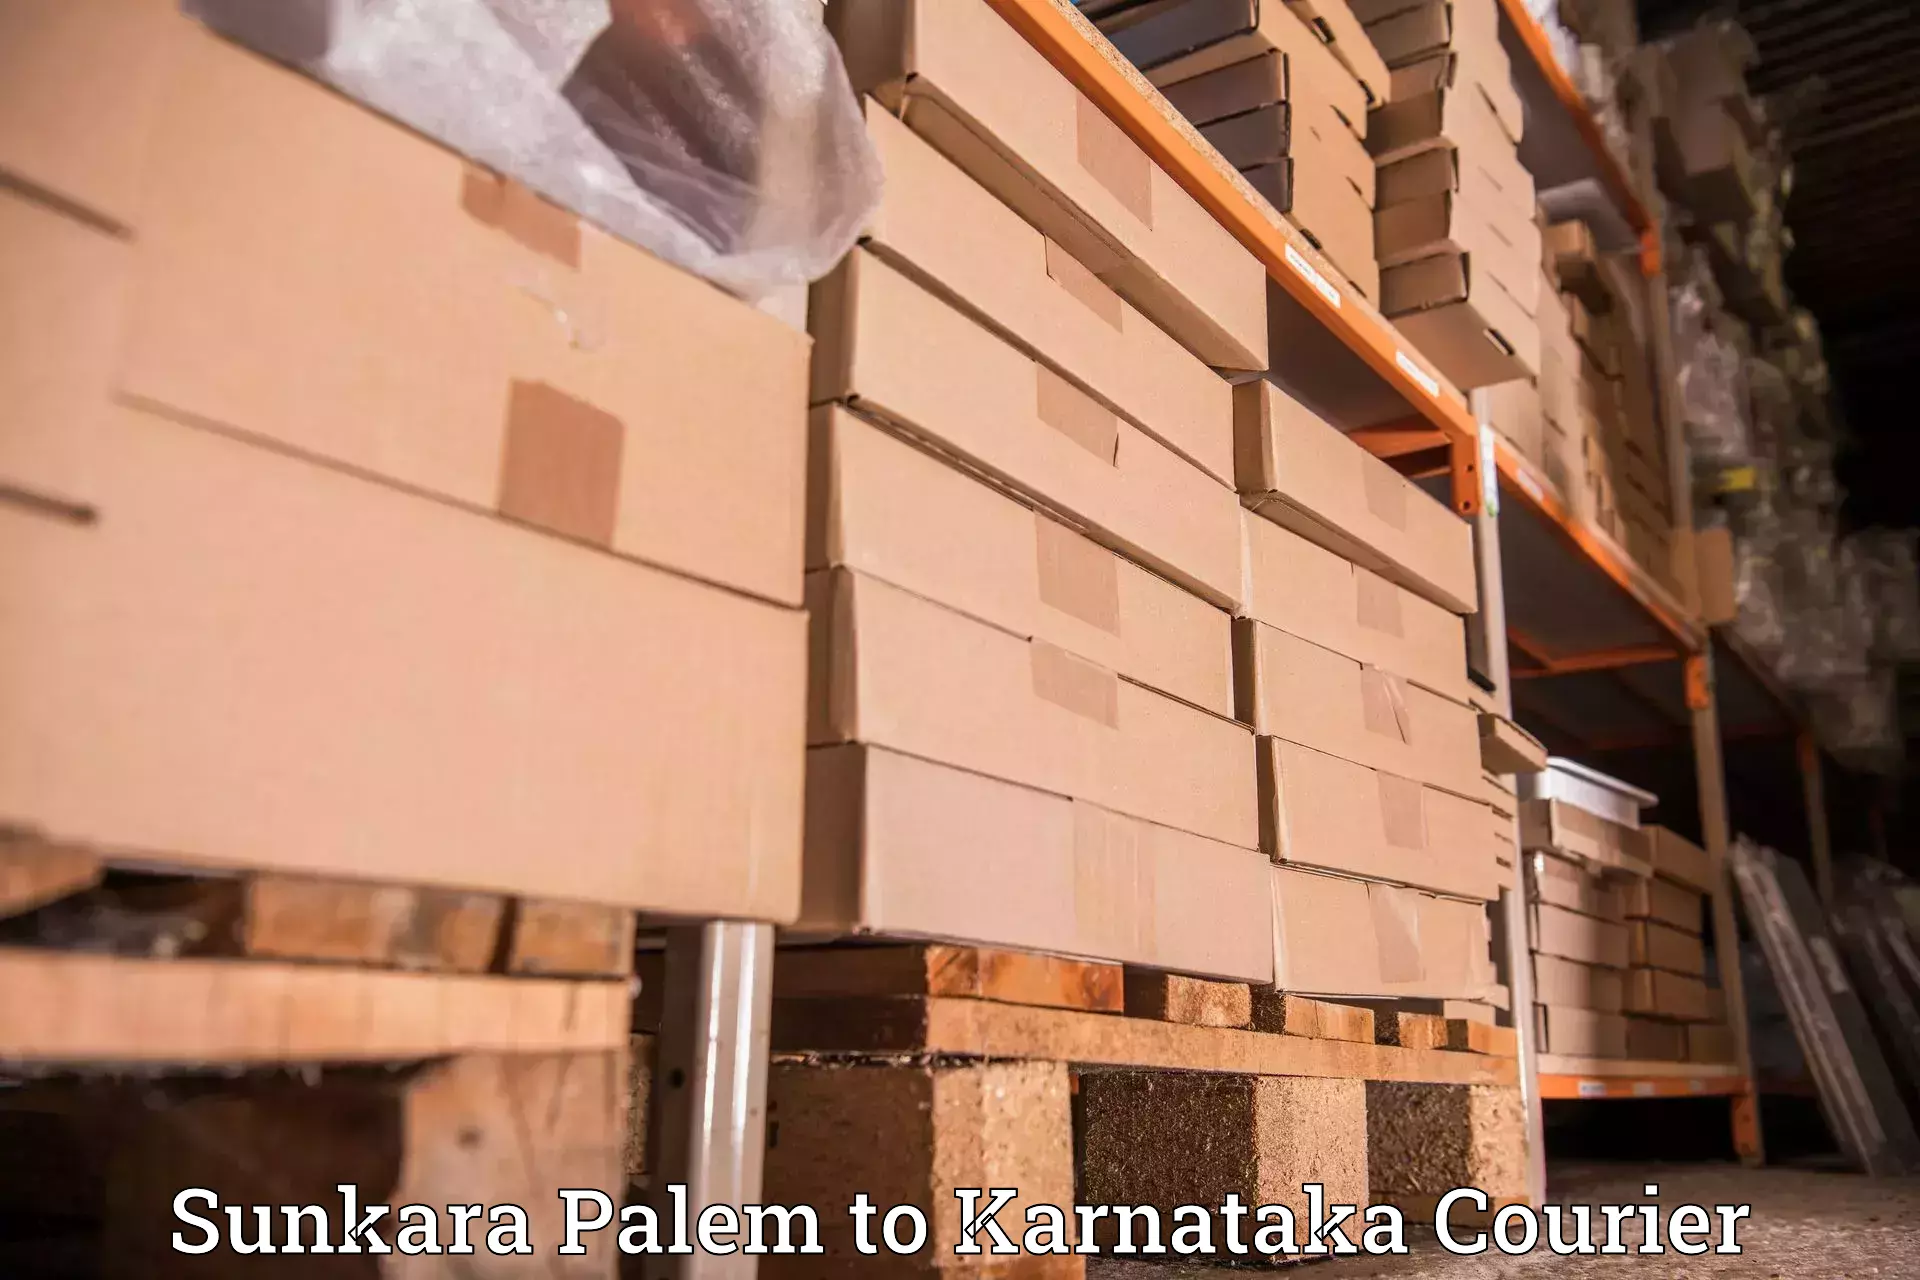 Bulk shipping discounts in Sunkara Palem to Yadgir